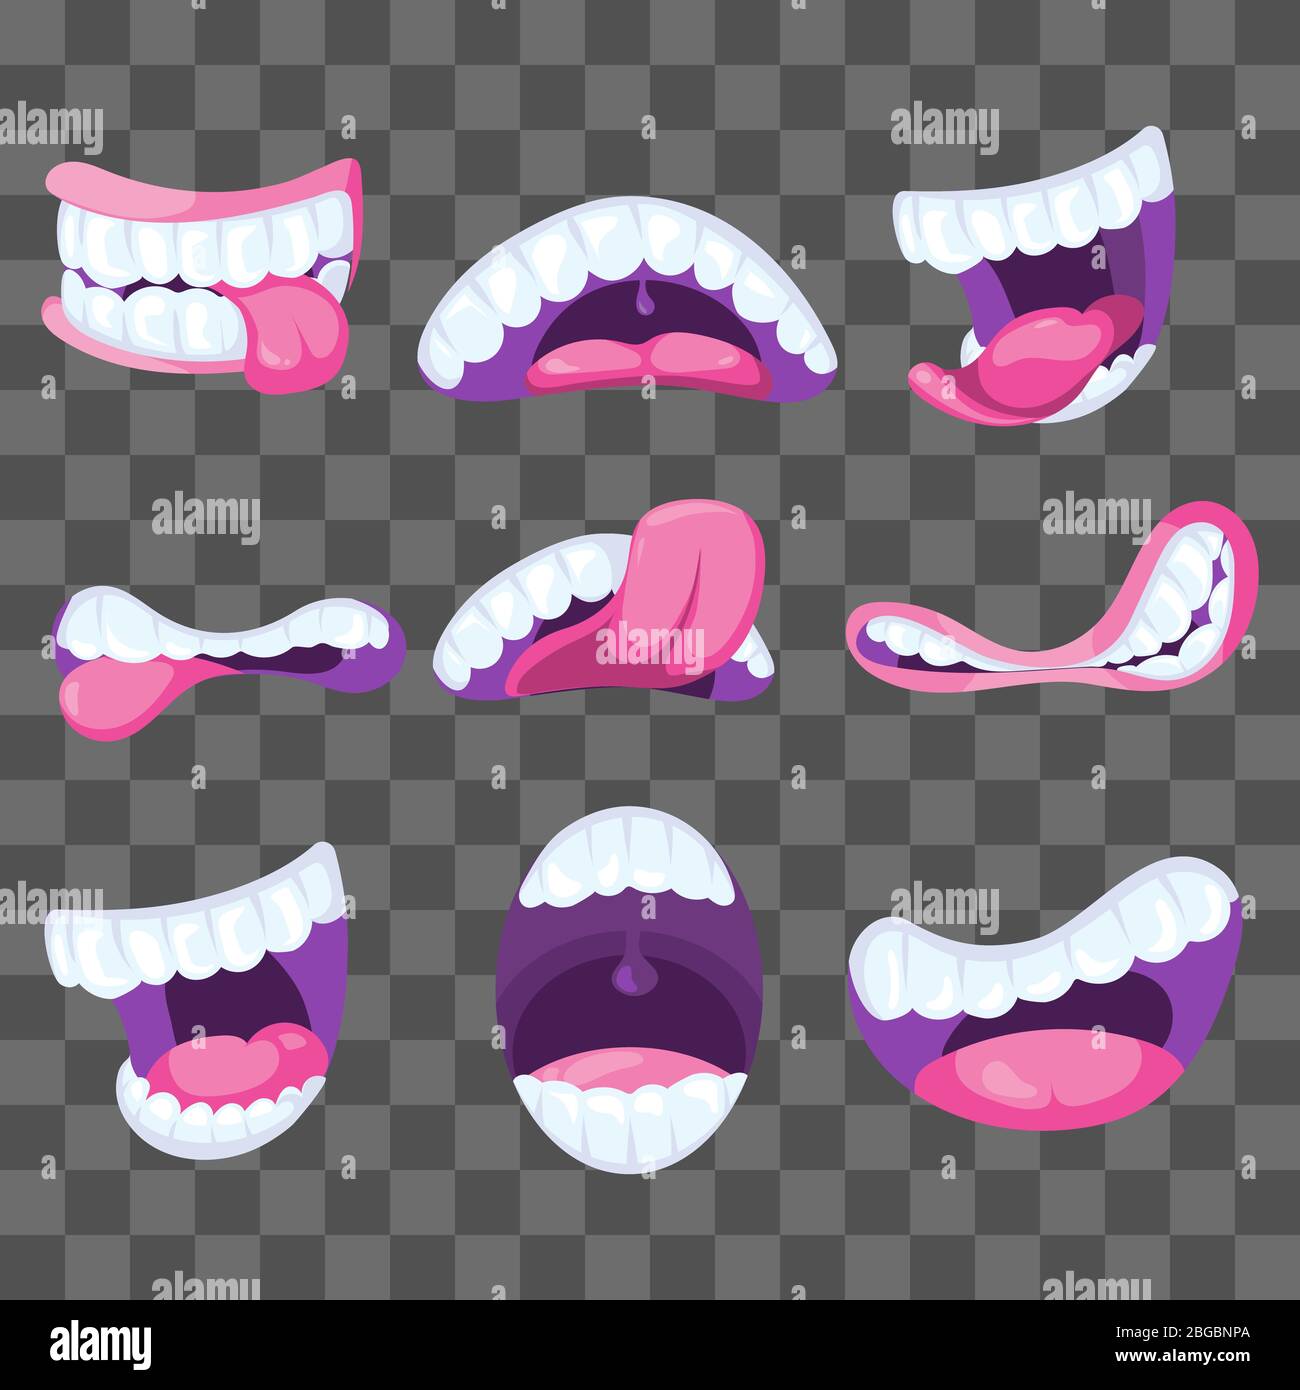 Divertenti bocche fumettiche vettoriali che esprimono diverse emozioni isolate su sfondo trasparente. Illustrazione vettoriale Illustrazione Vettoriale